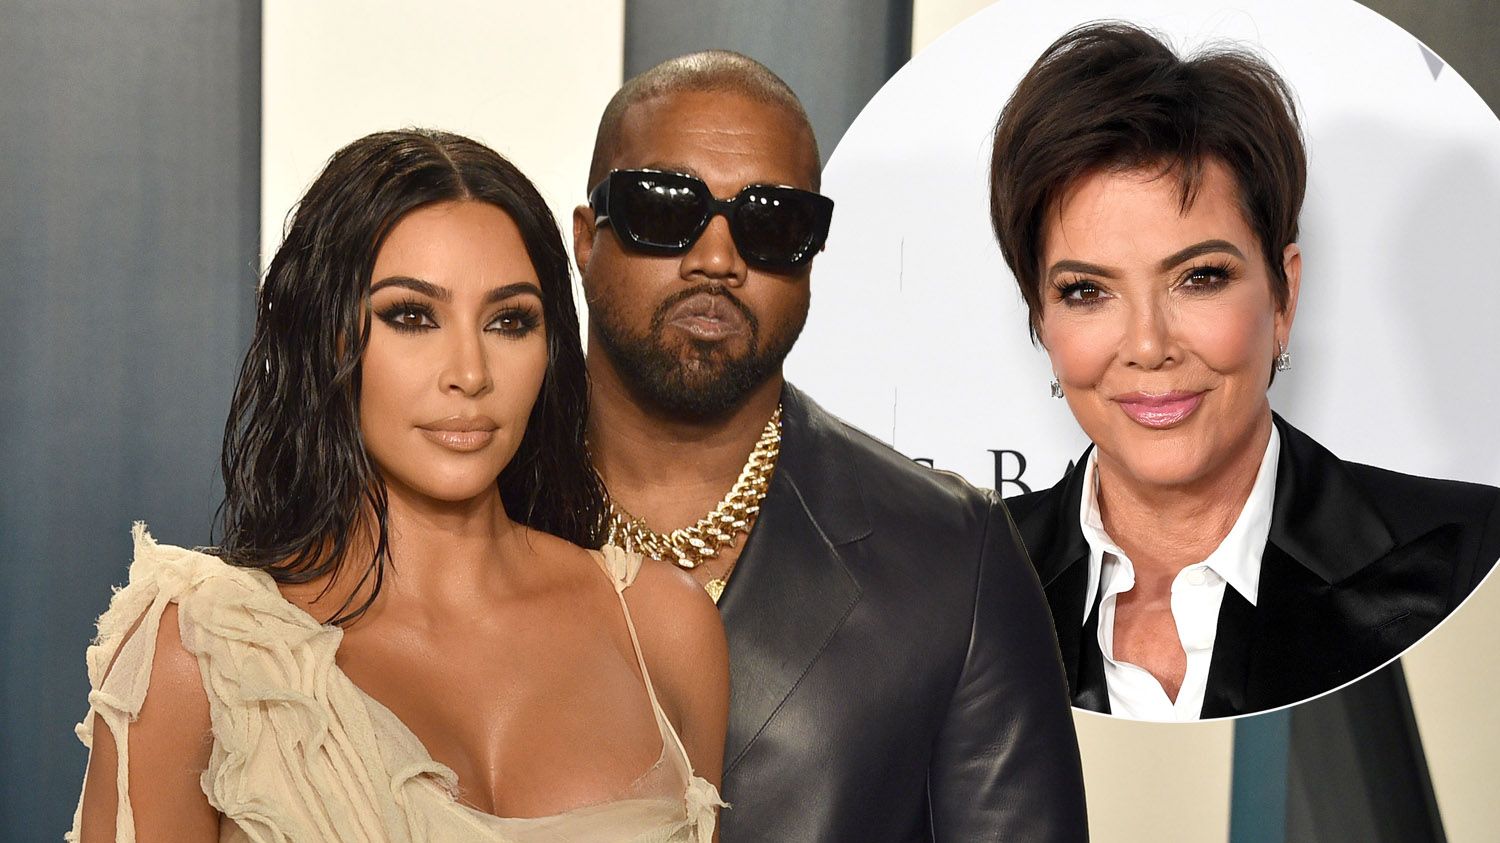 Kris Jenner speaks out on Kim Kardashian and Kanye West's divorce